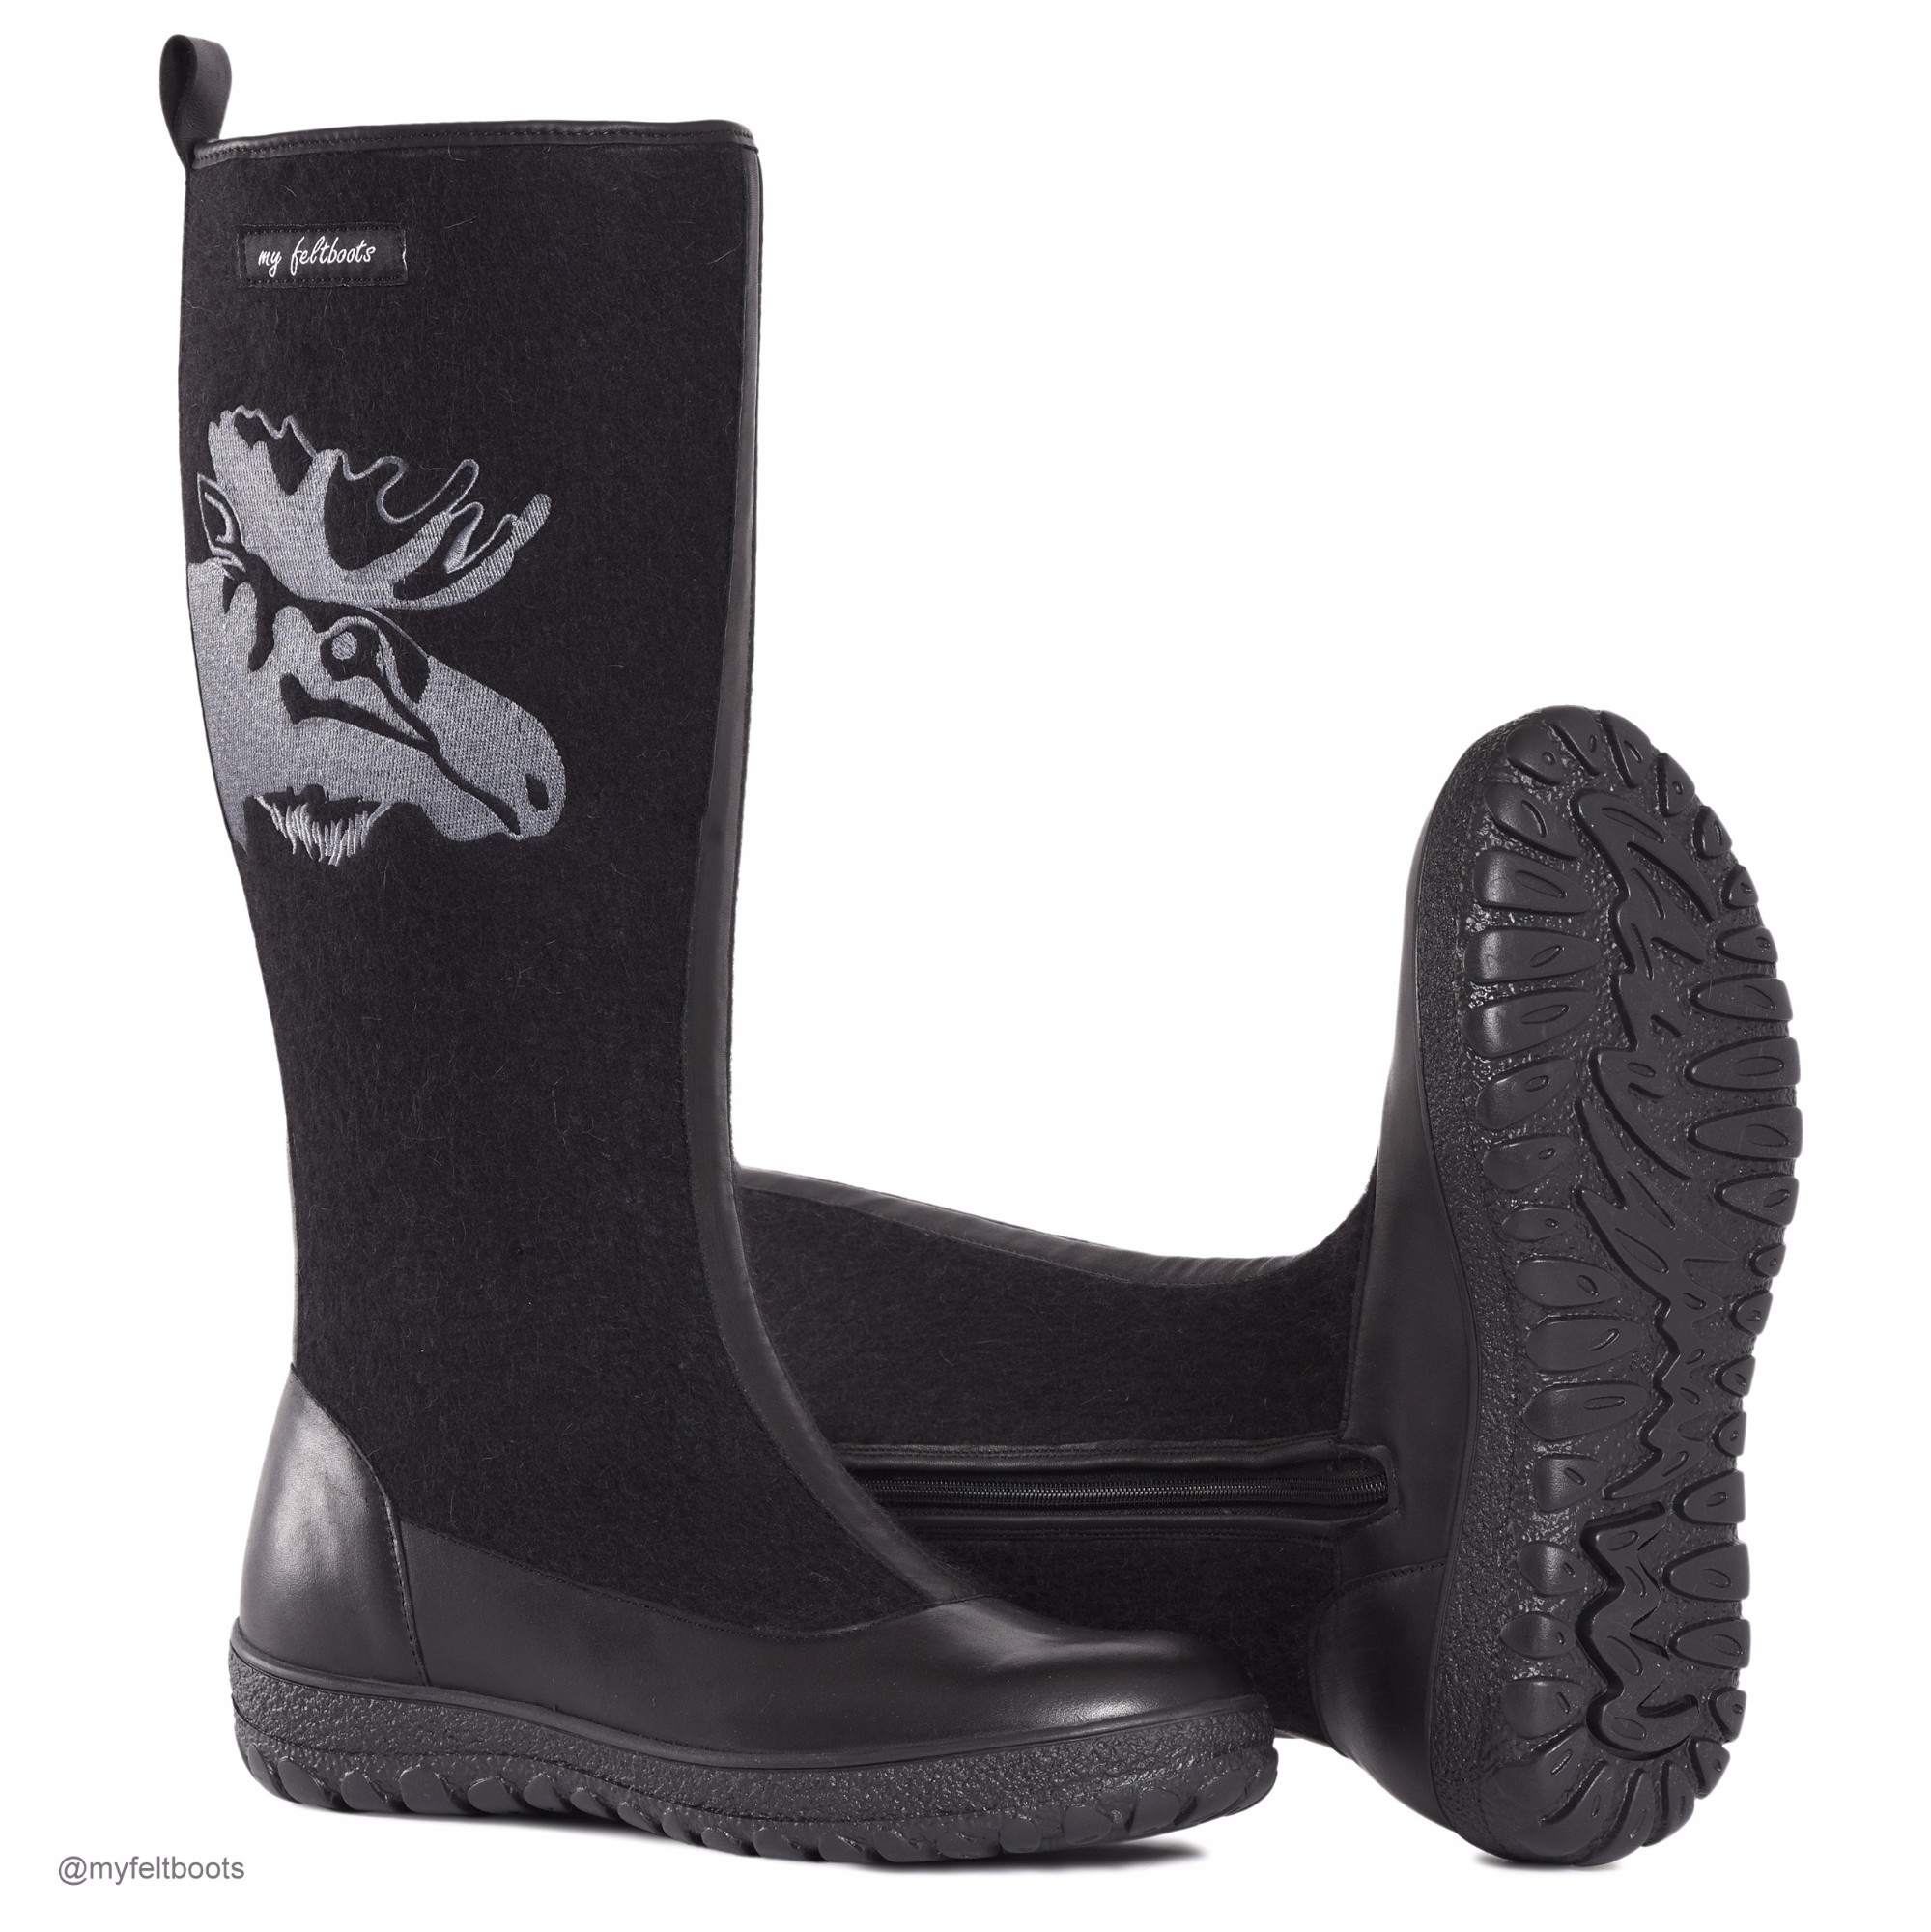 My felt boots | Catalog | FELT BOOTS MOOSE ® my feltboots